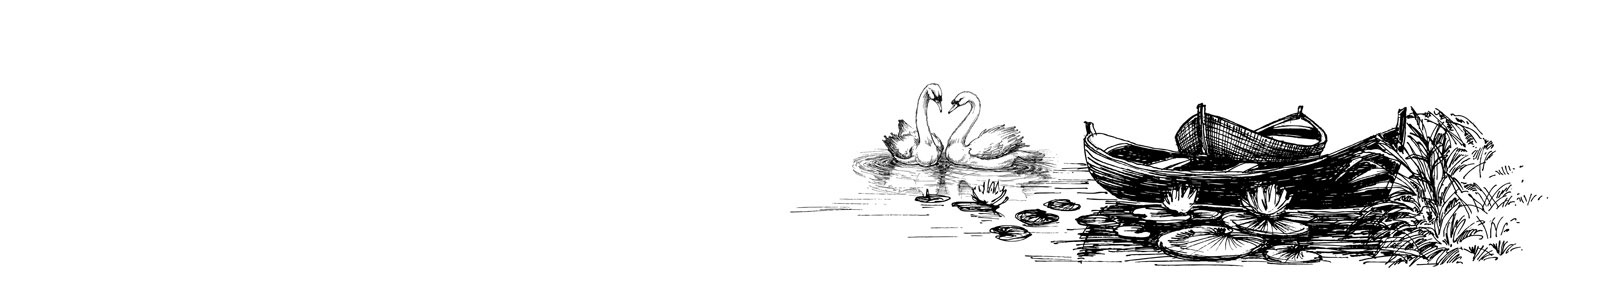 №5739 - Лебеди на озере, рисунок на белом фоне